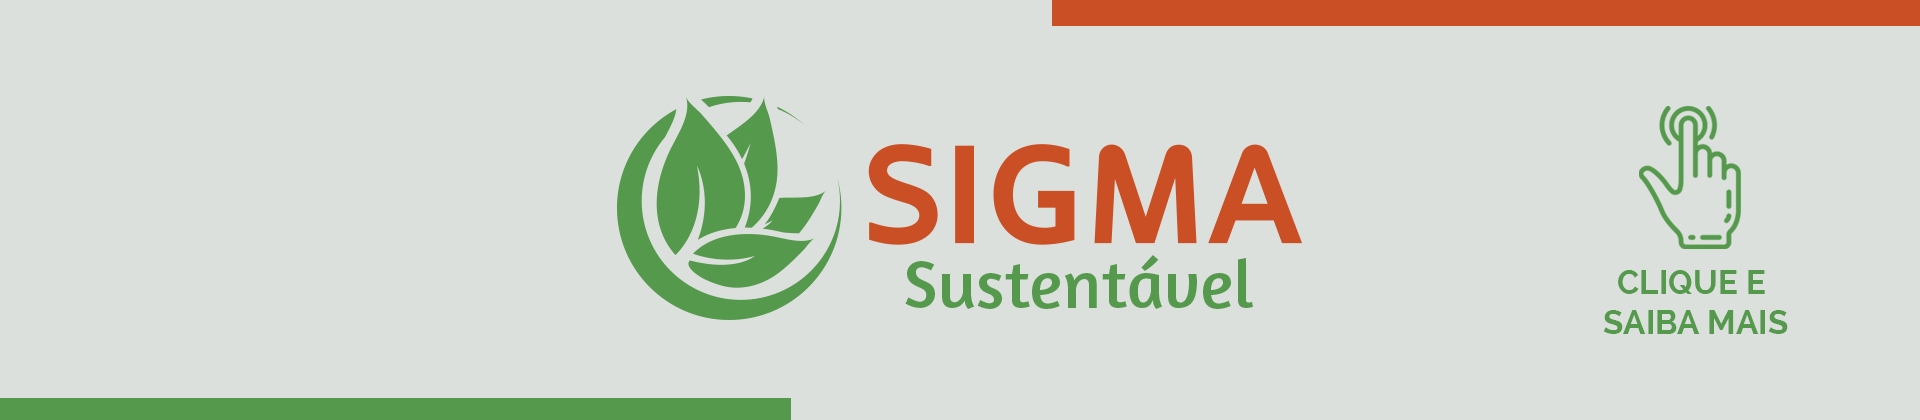 Sigma Sustentável